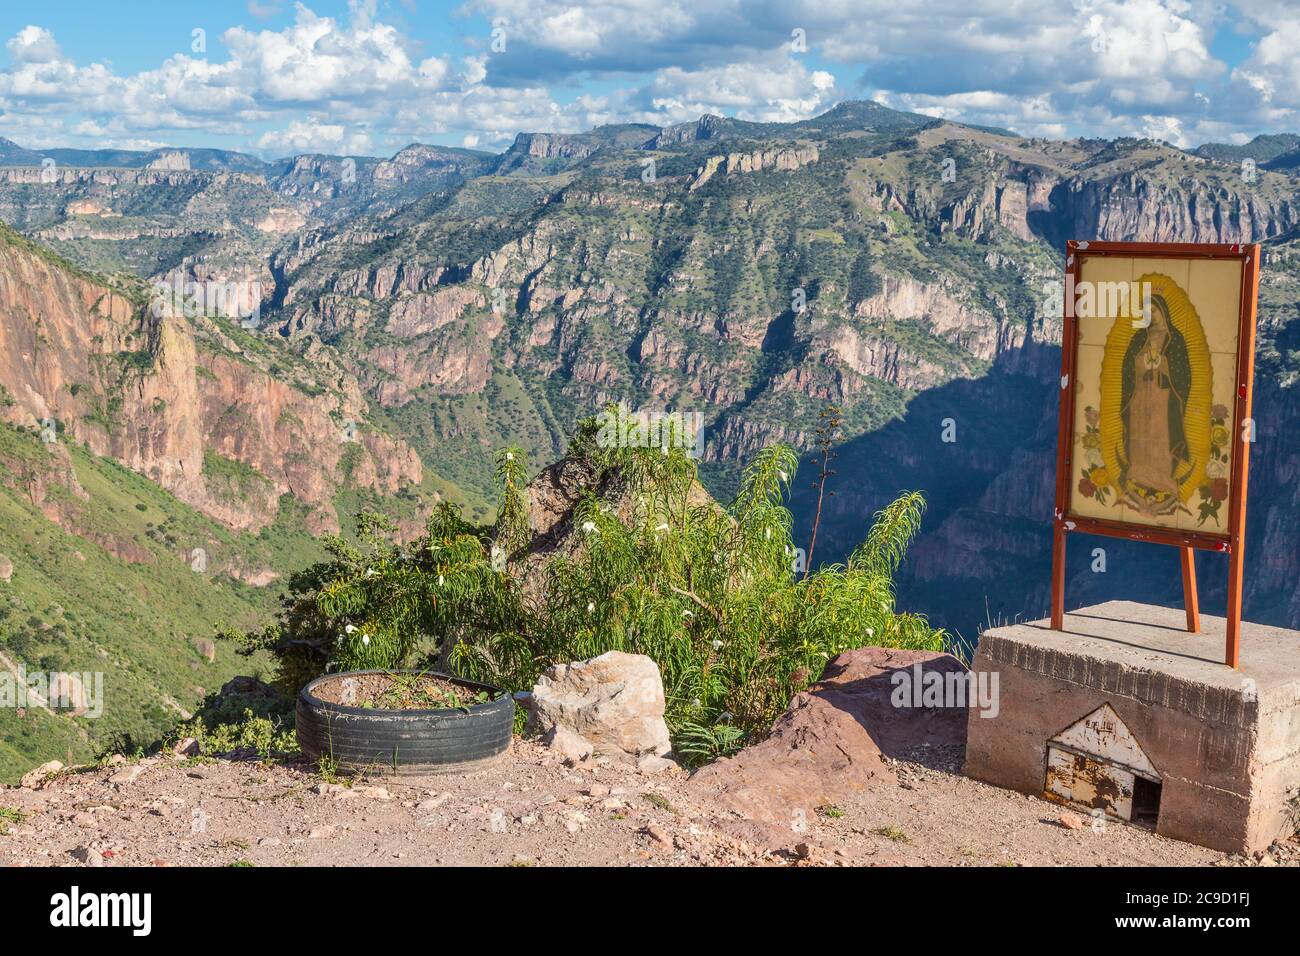 Schrein Mit Blick Auf Batopilas Canyon Scenic View, Chihuahua State, Mexiko. Teil des Copper Canyon Komplexes. Stockfoto